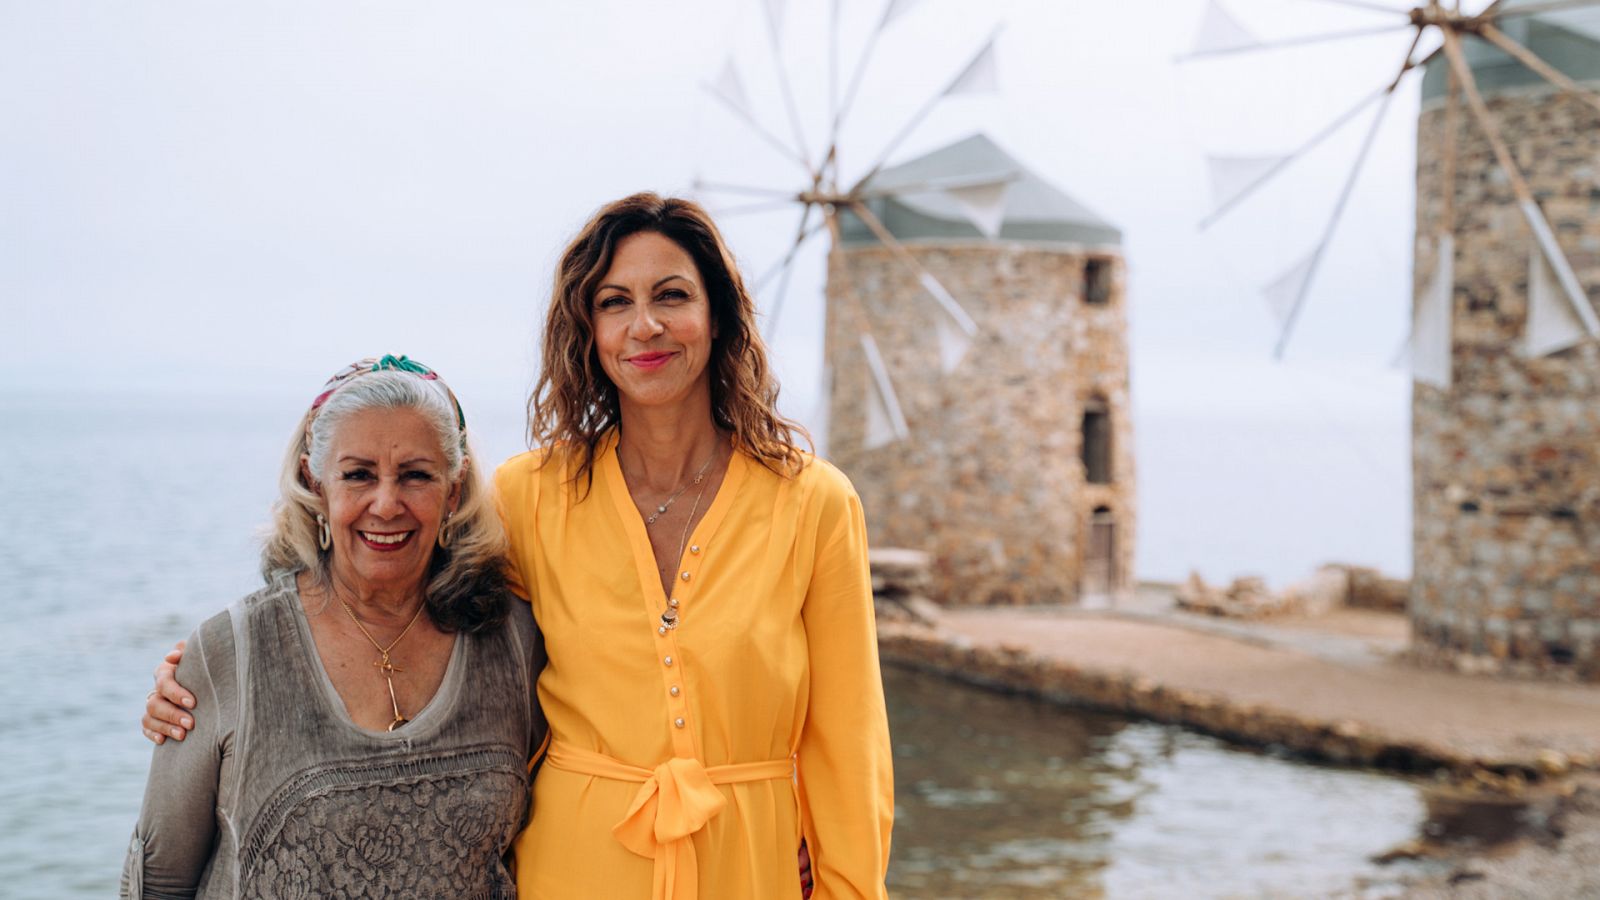 Las islas griegas con Julia Bradbury - Quíos - Documental en RTVE